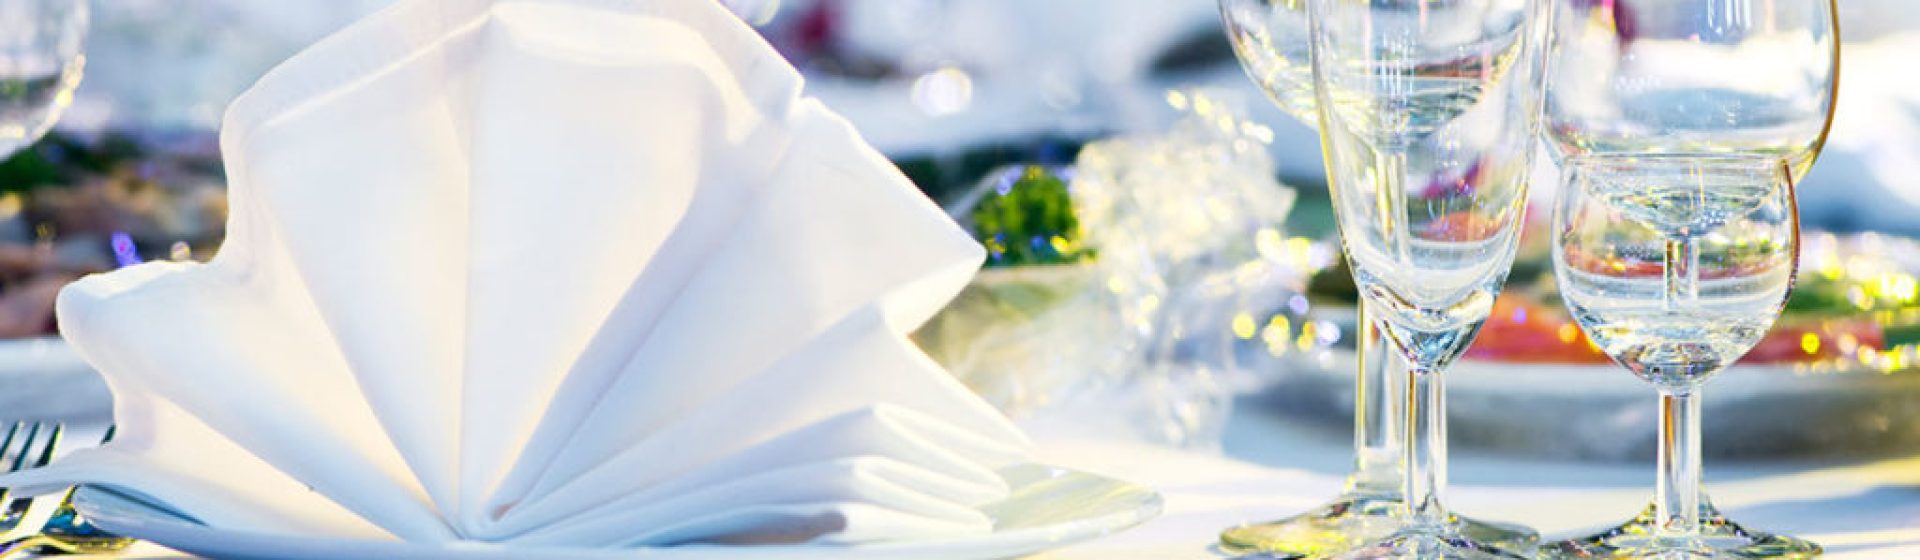 Service de location de vaisselle à Fréjus – Wedding Event